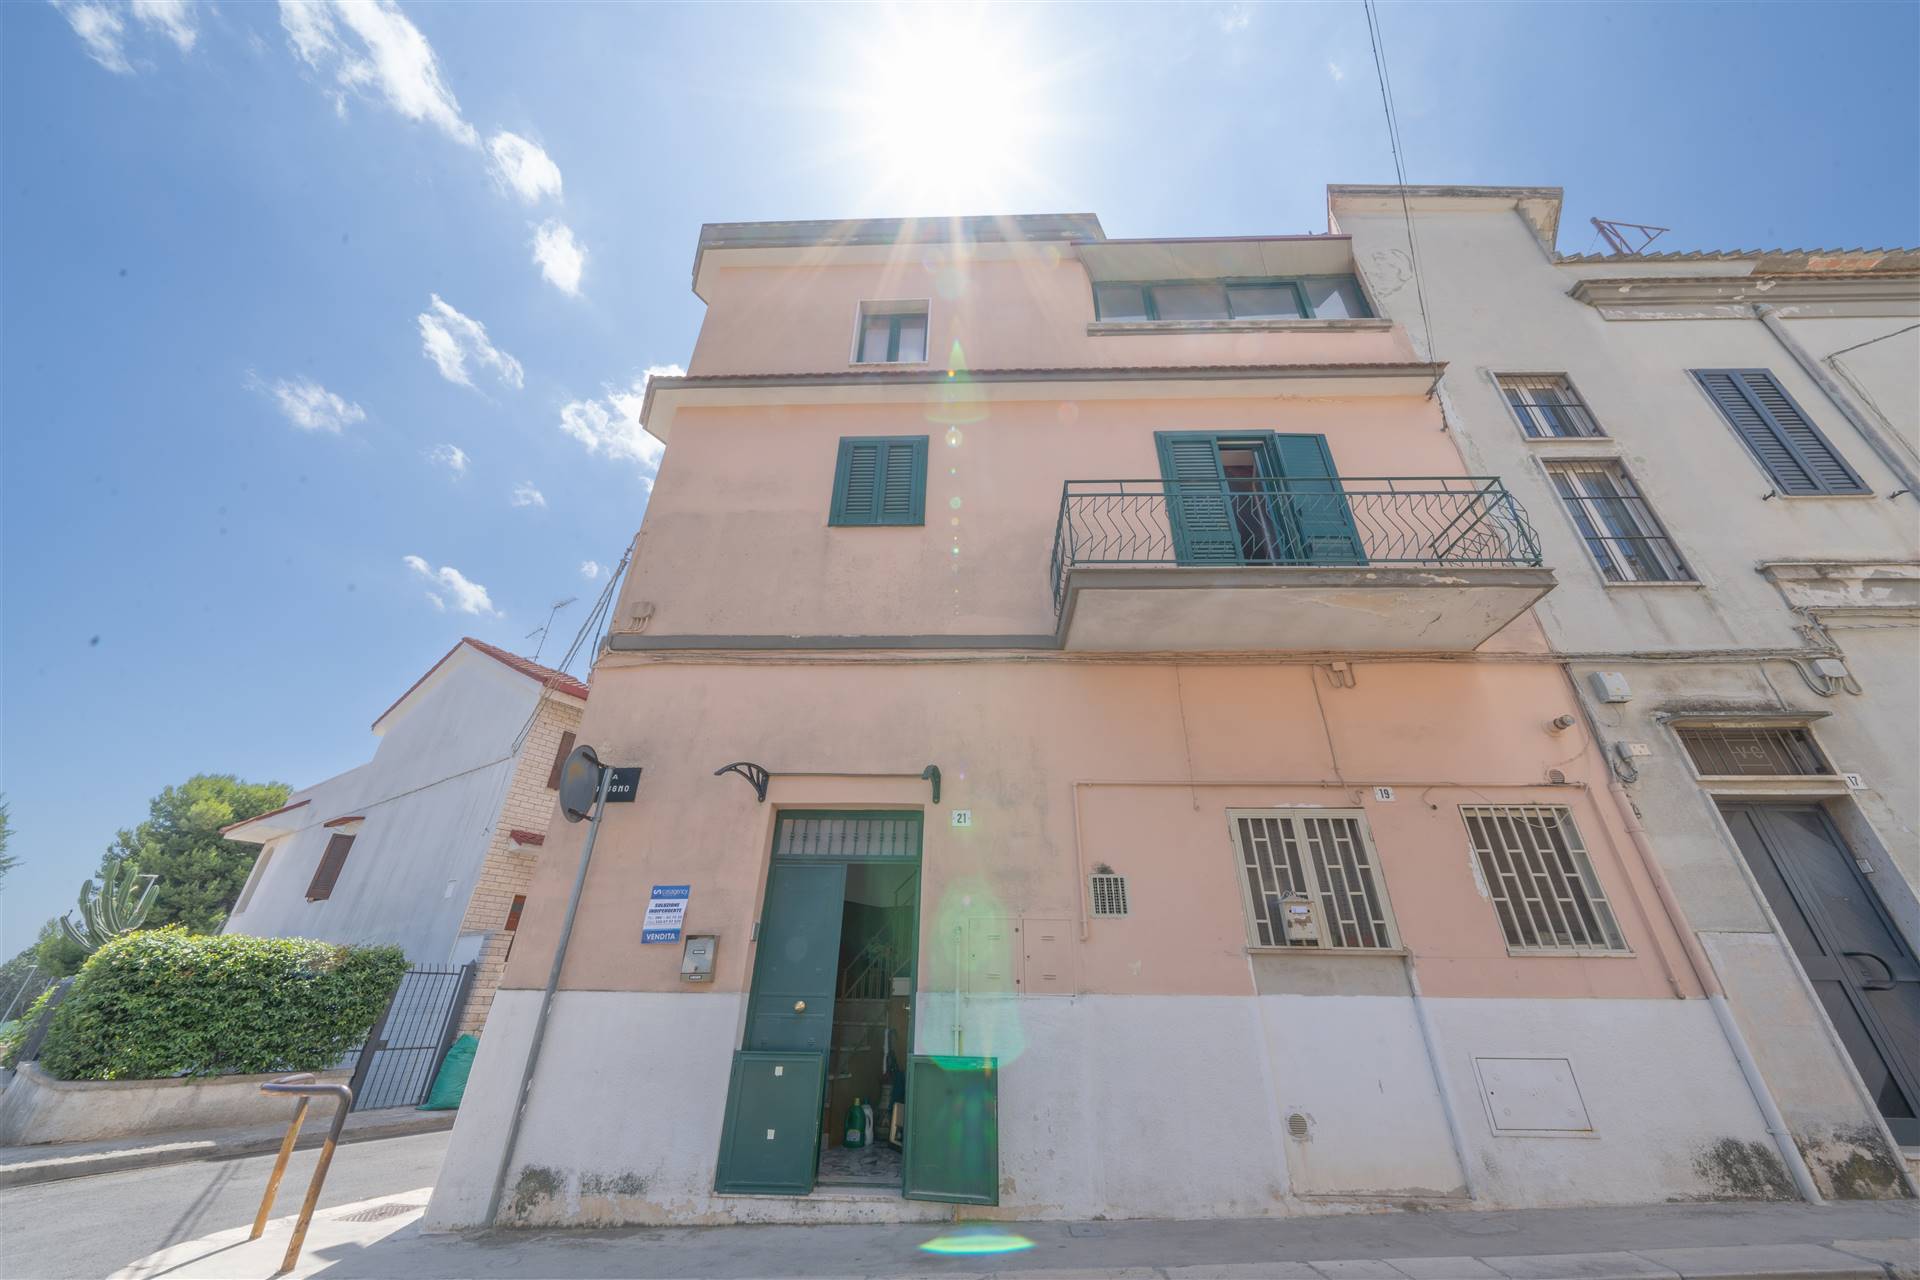 Appartamento in vendita a Palo del Colle, 3 locali, prezzo € 90.000 | PortaleAgenzieImmobiliari.it